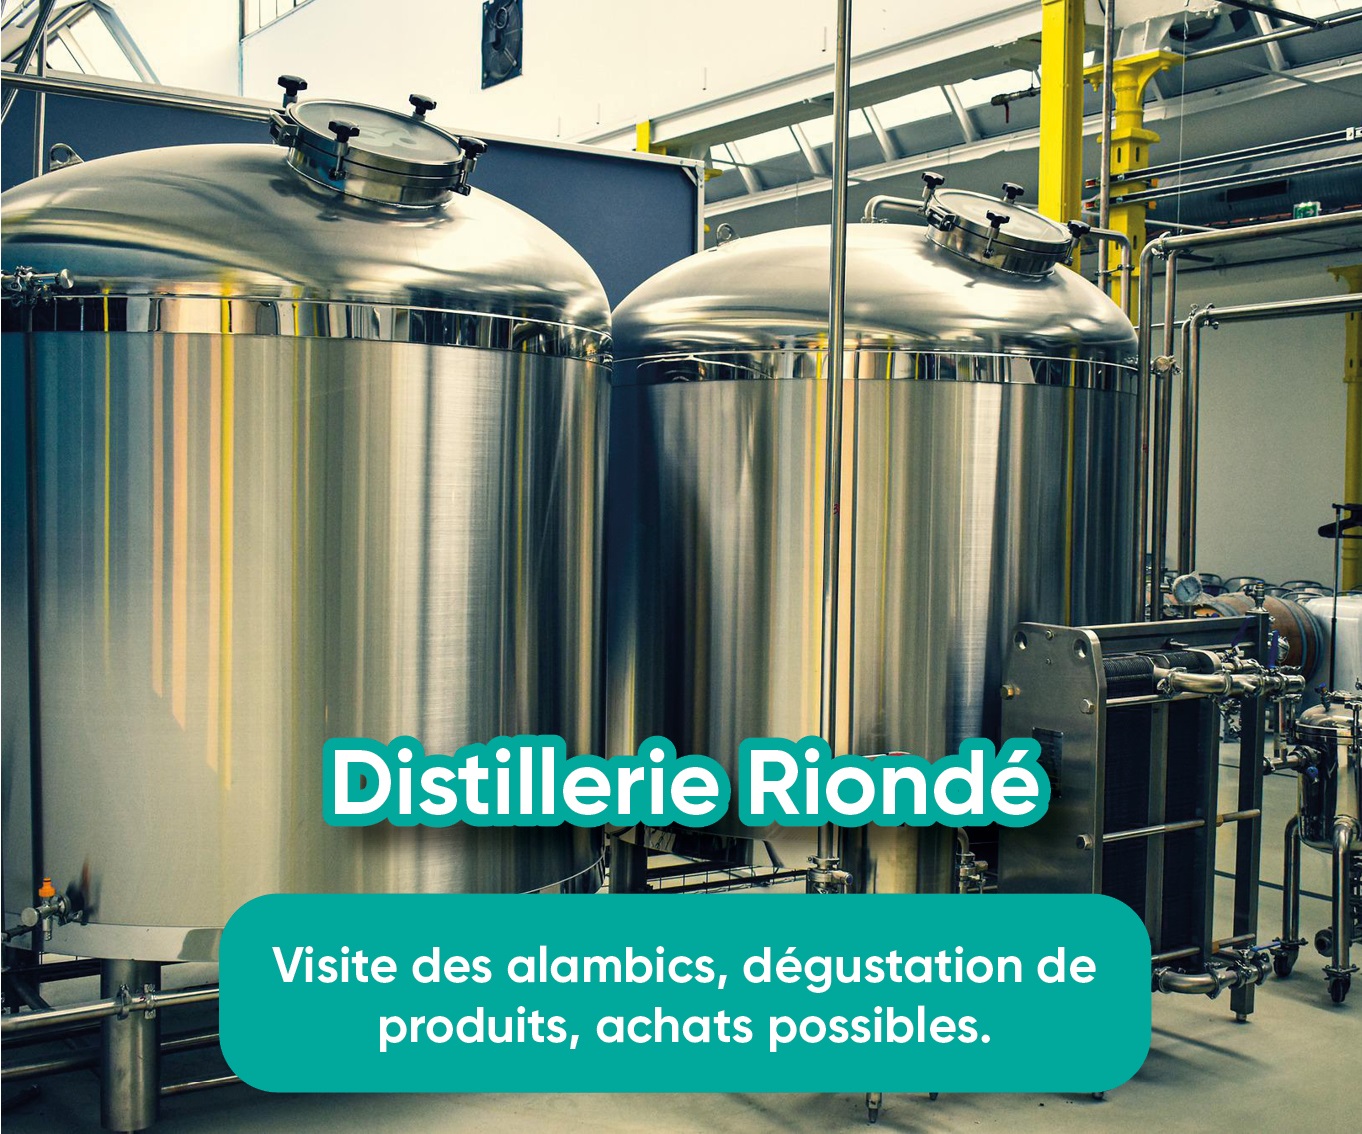 Distillerie Riondé